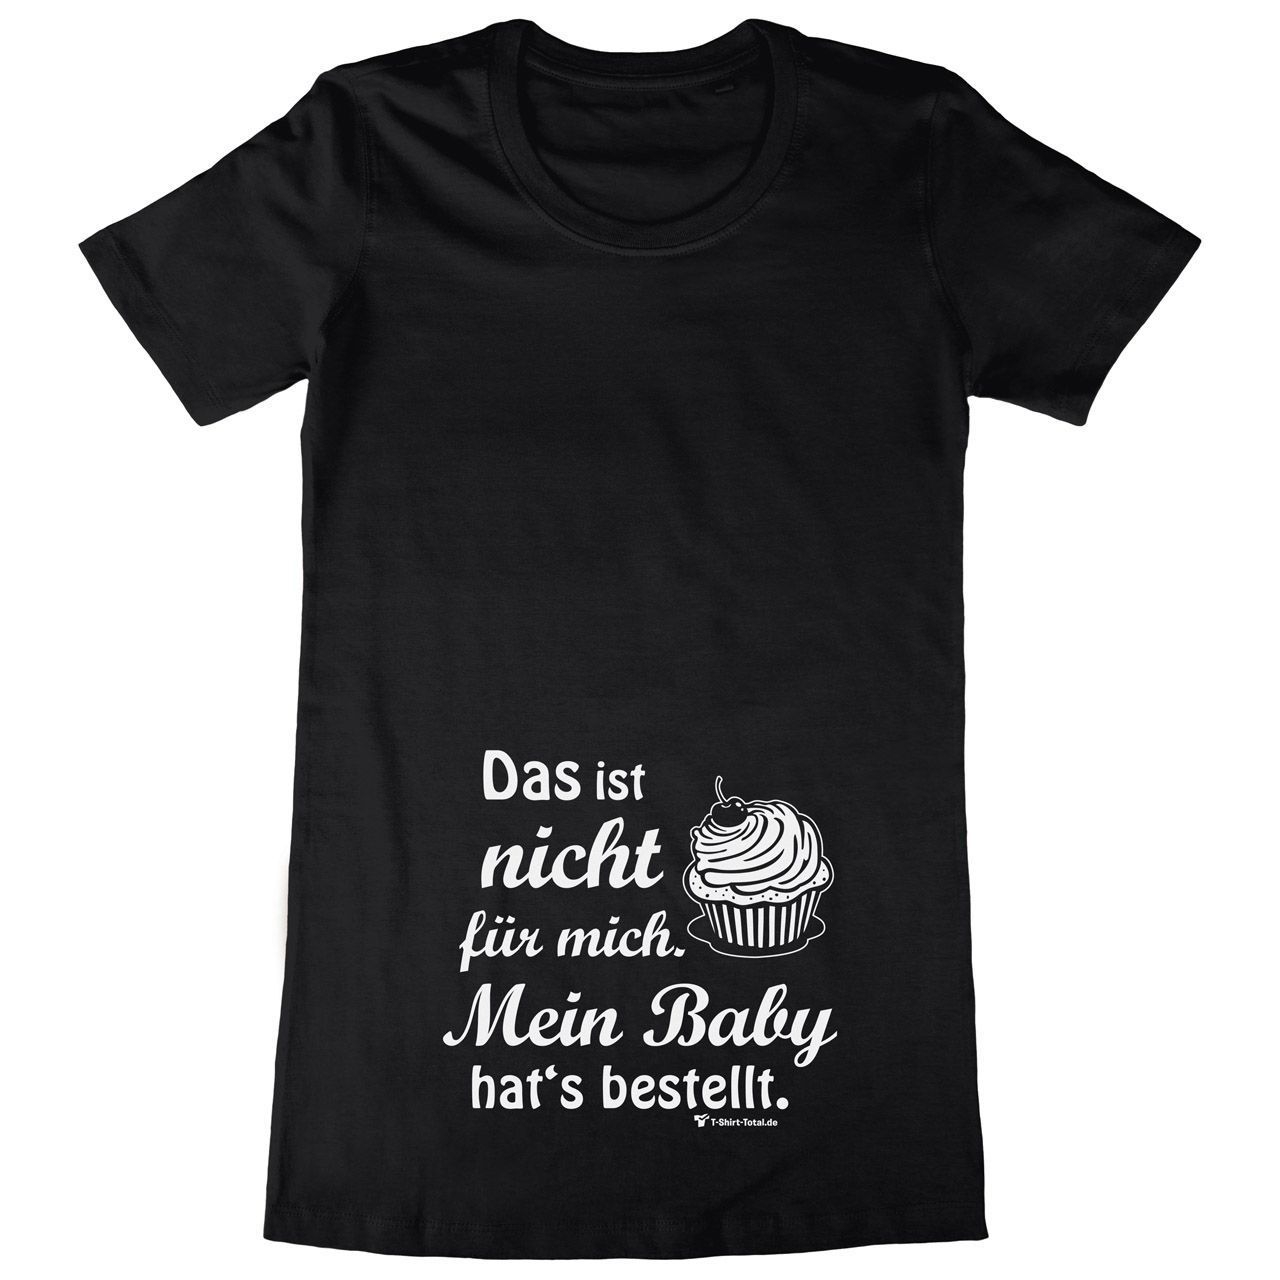 Baby hats bestellt Woman Long Shirt schwarz 2-Extra Large